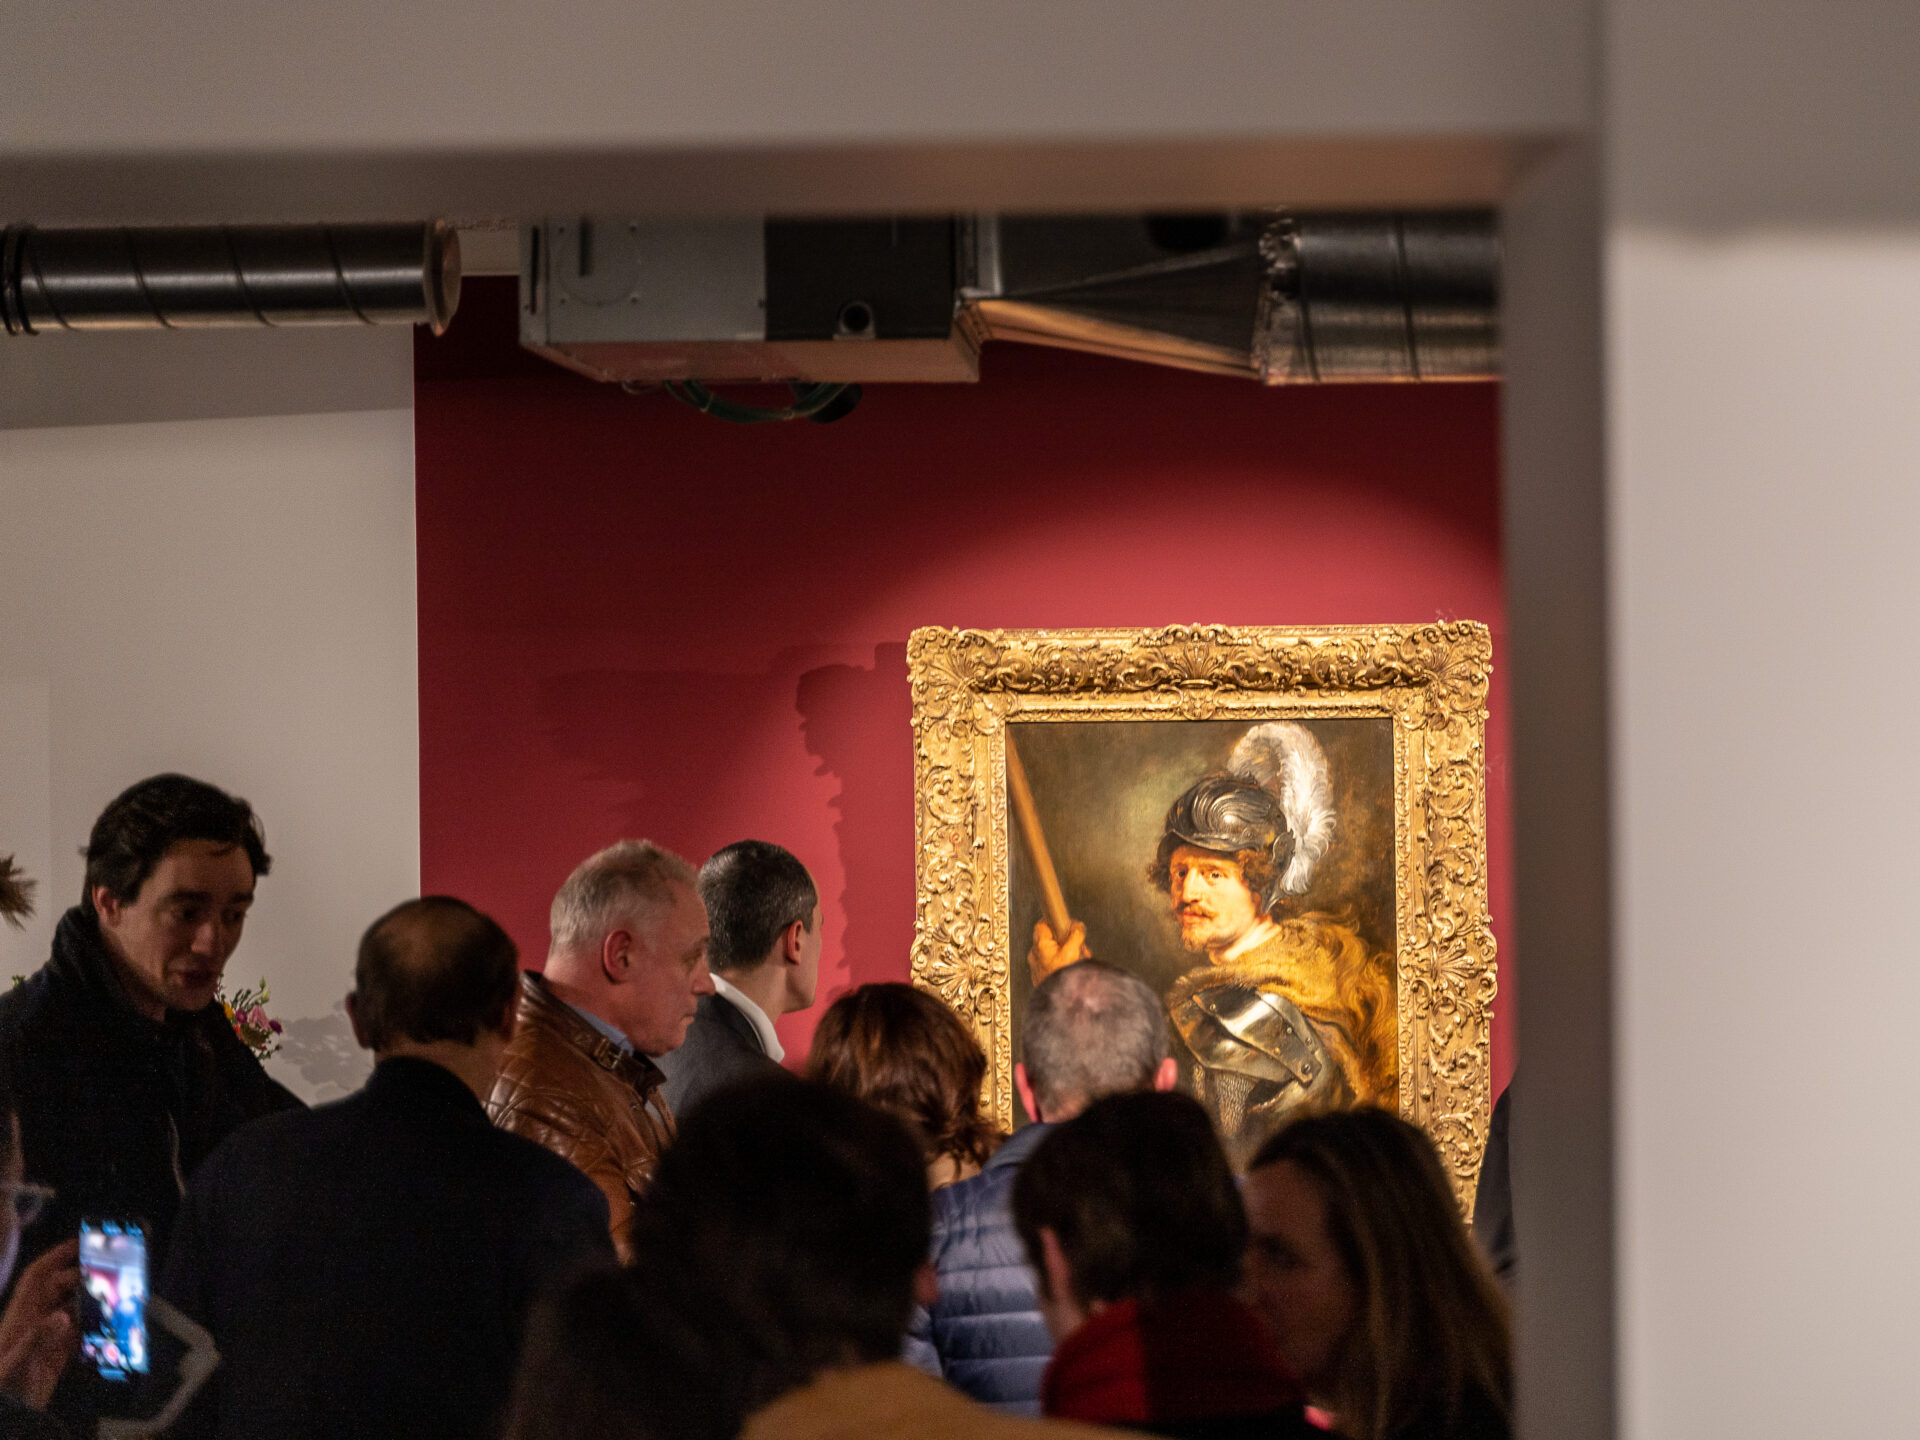 Belgium Sothebys Int. Realty Rubens’ – “Portrait of a man as a Mars god”